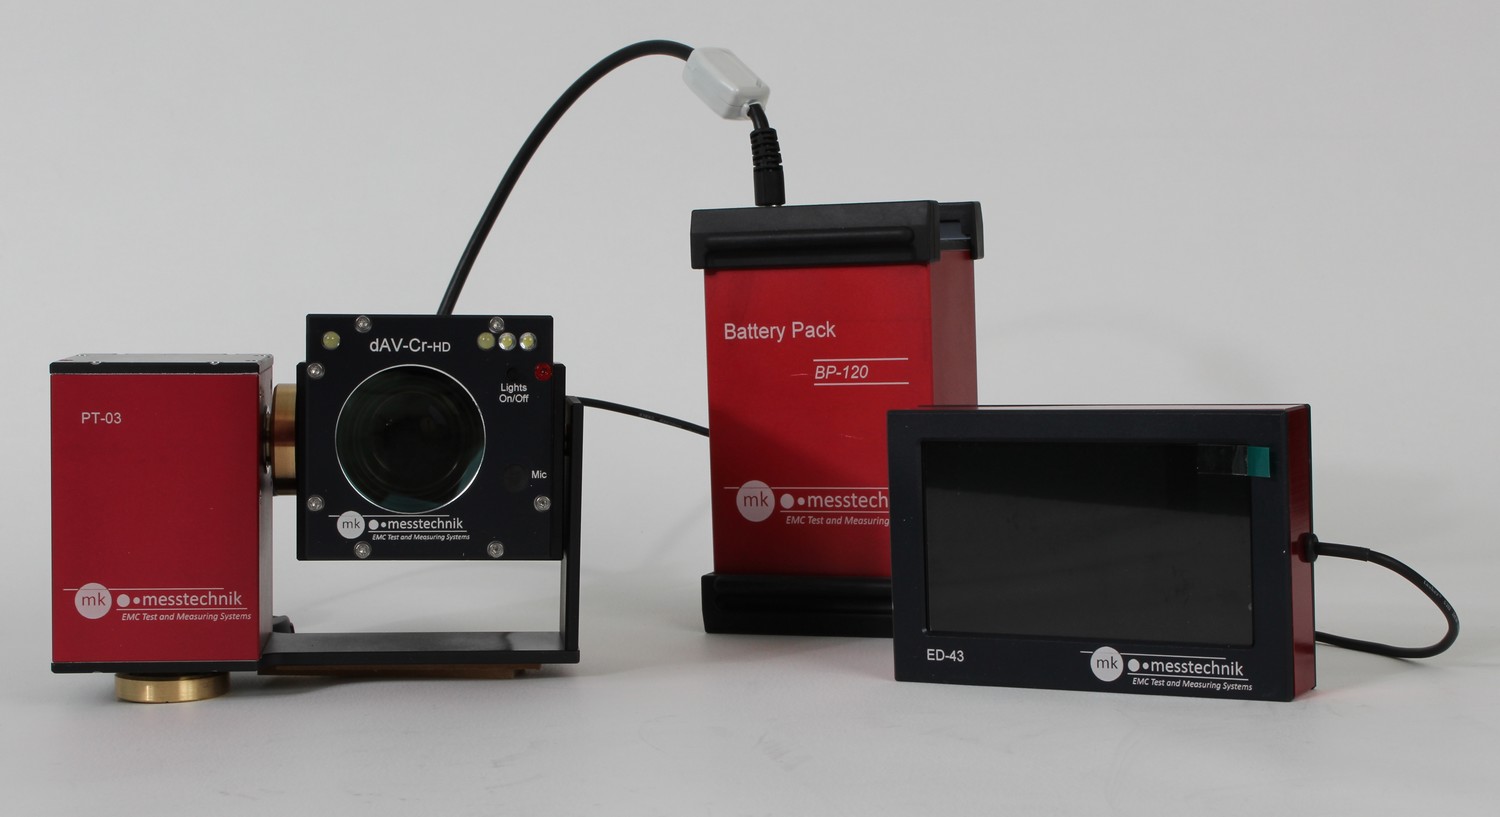 MK - dAV-Cr-HD con Pan / Tilt, Battery Pack e Schermo esterno